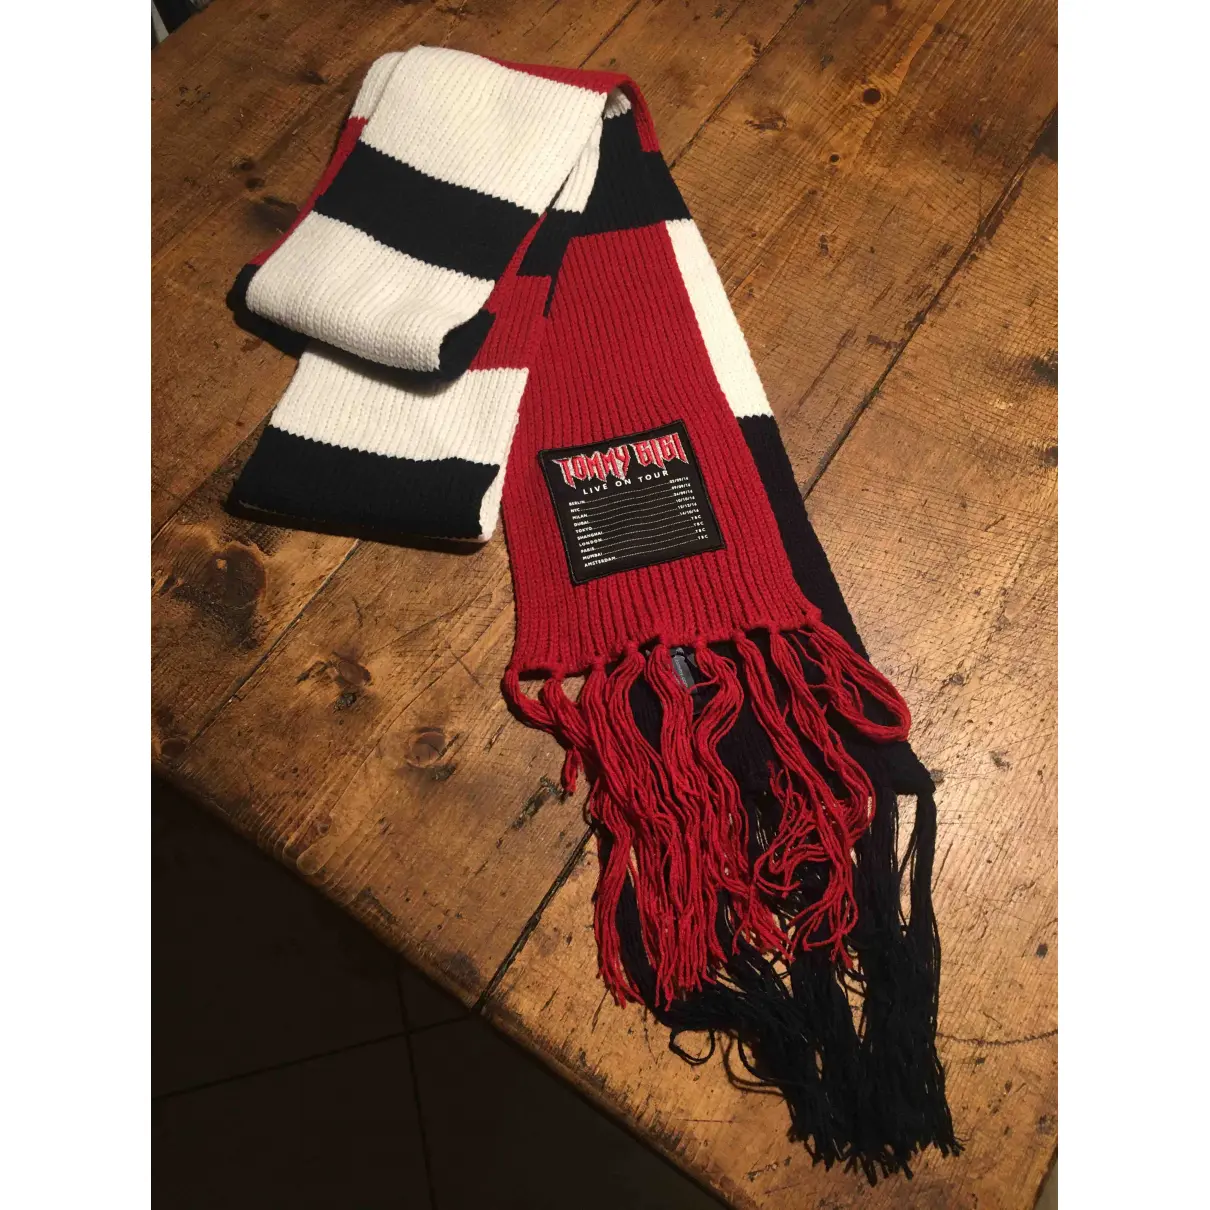 Buy Gigi Hadid x Tommy Hilfiger Wool scarf online